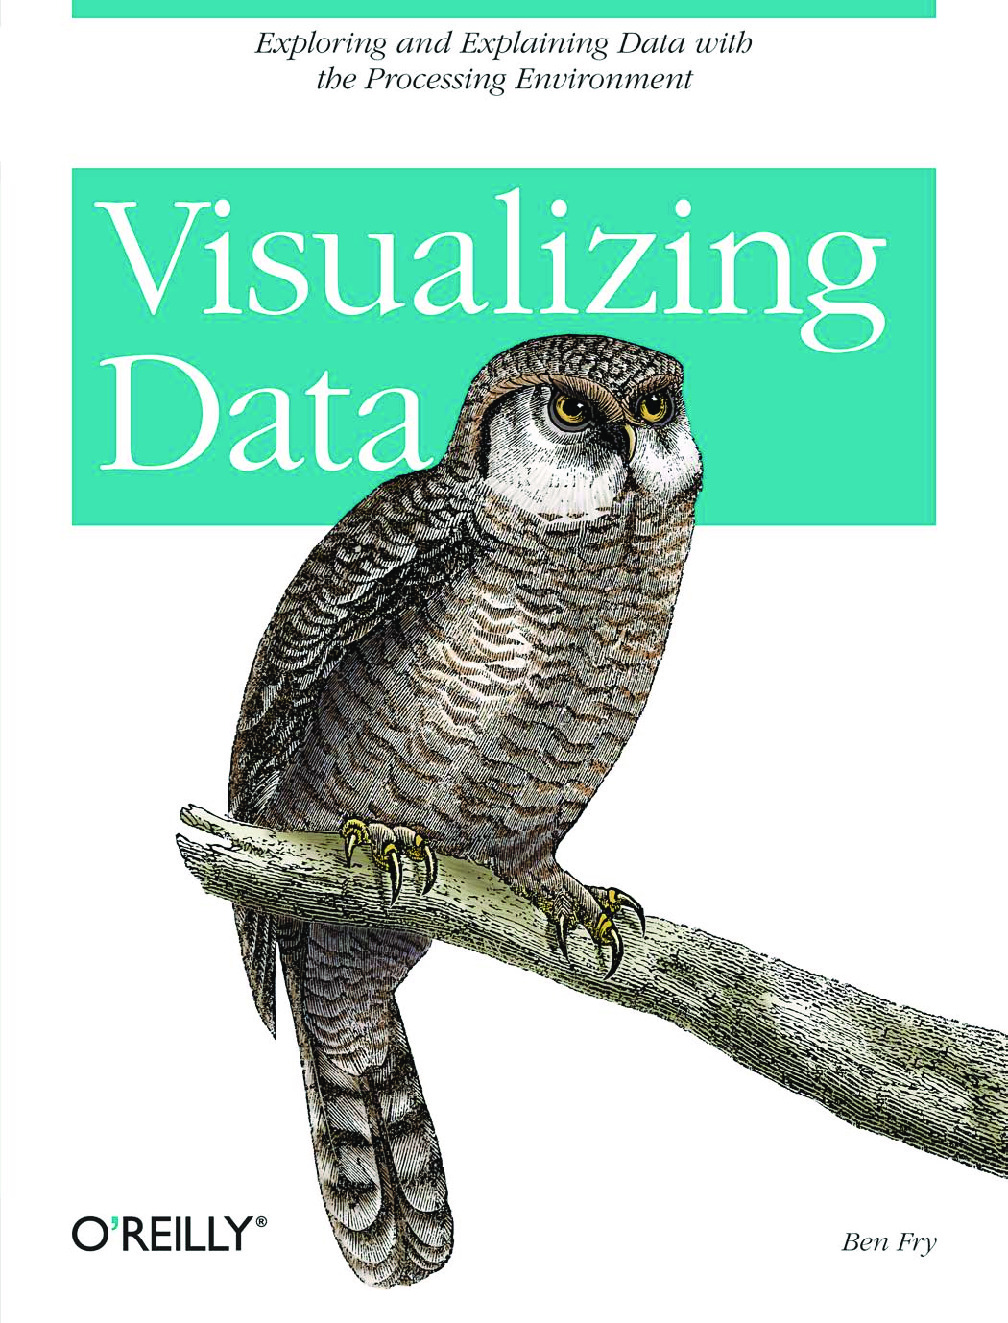 Visualizing Data